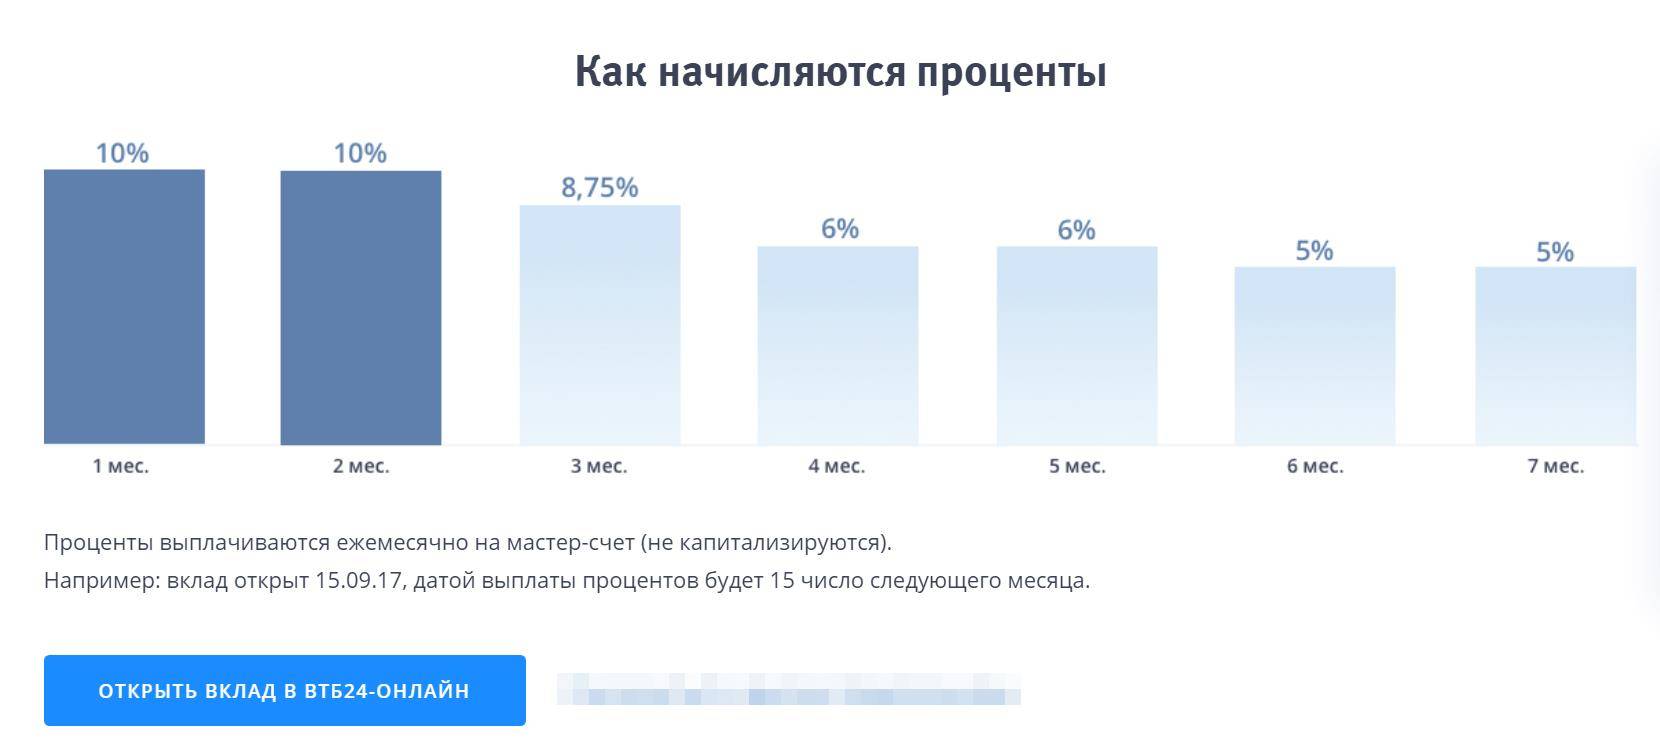 Вклады втб  на 04.12.2021 ставка до 7% для физических лиц | банки.ру